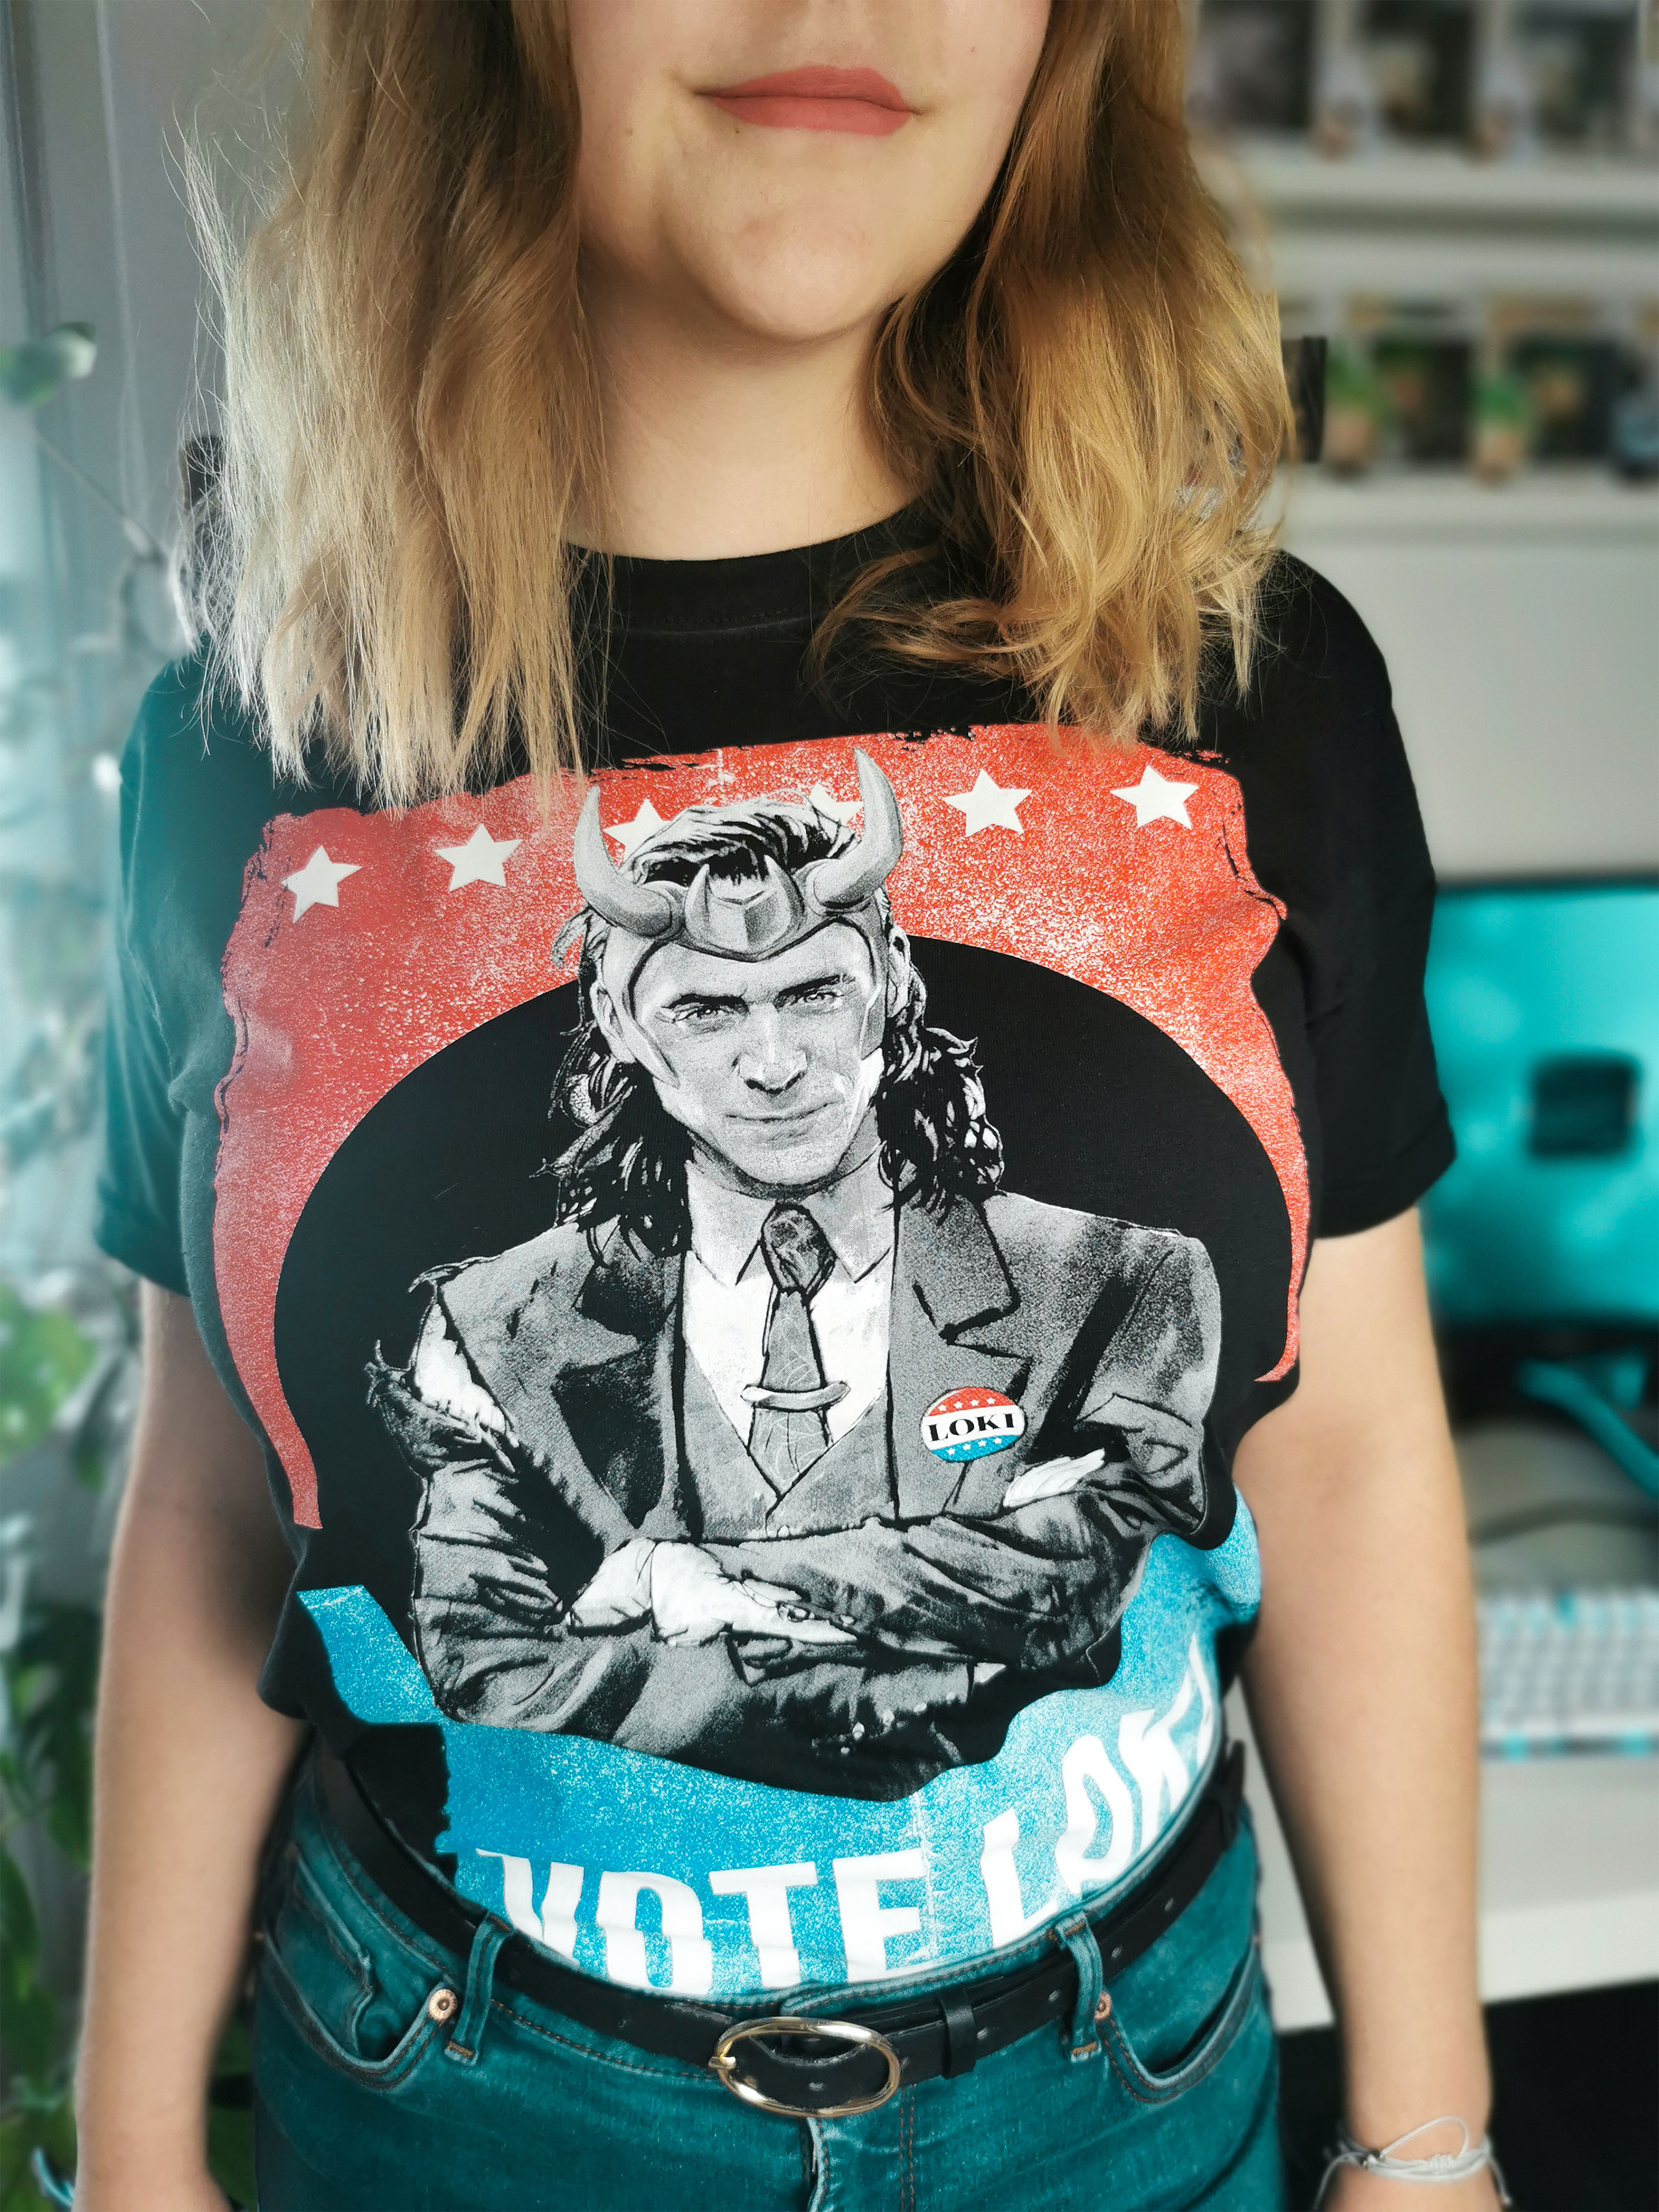 Loki - Vote Loki T-Shirt schwarz